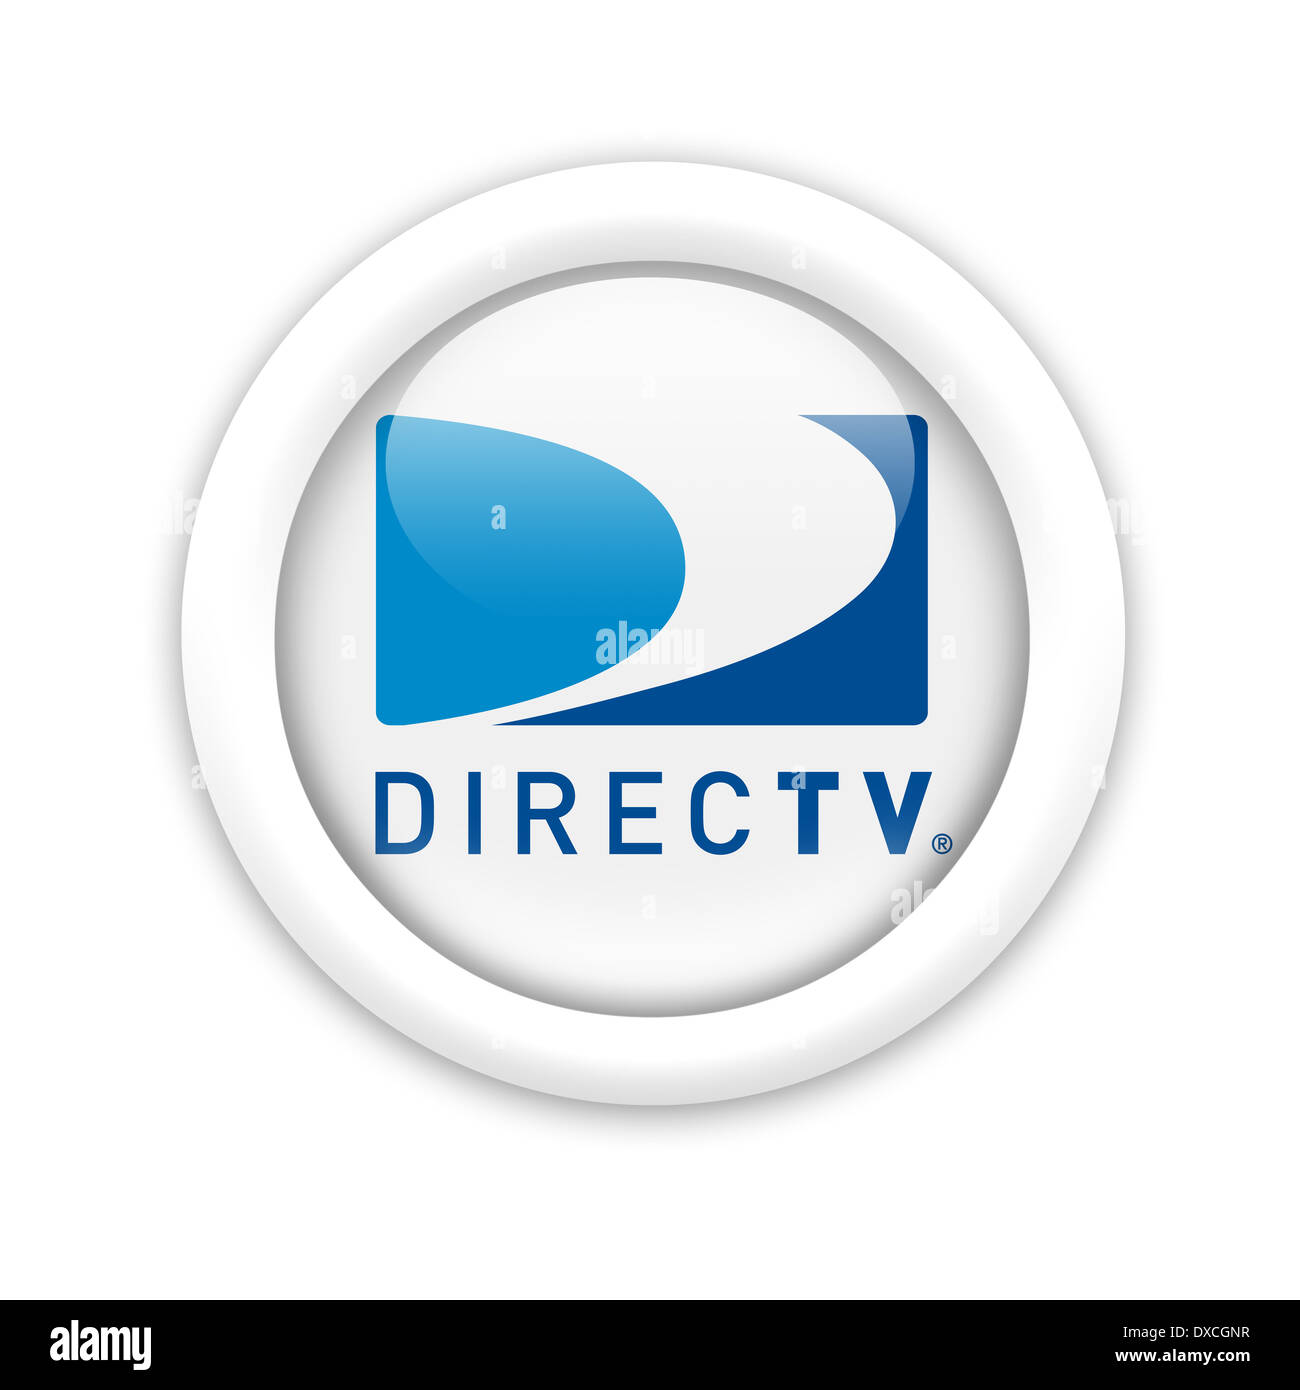 Direct TV logo symbol icon flag emblem Stock Photo